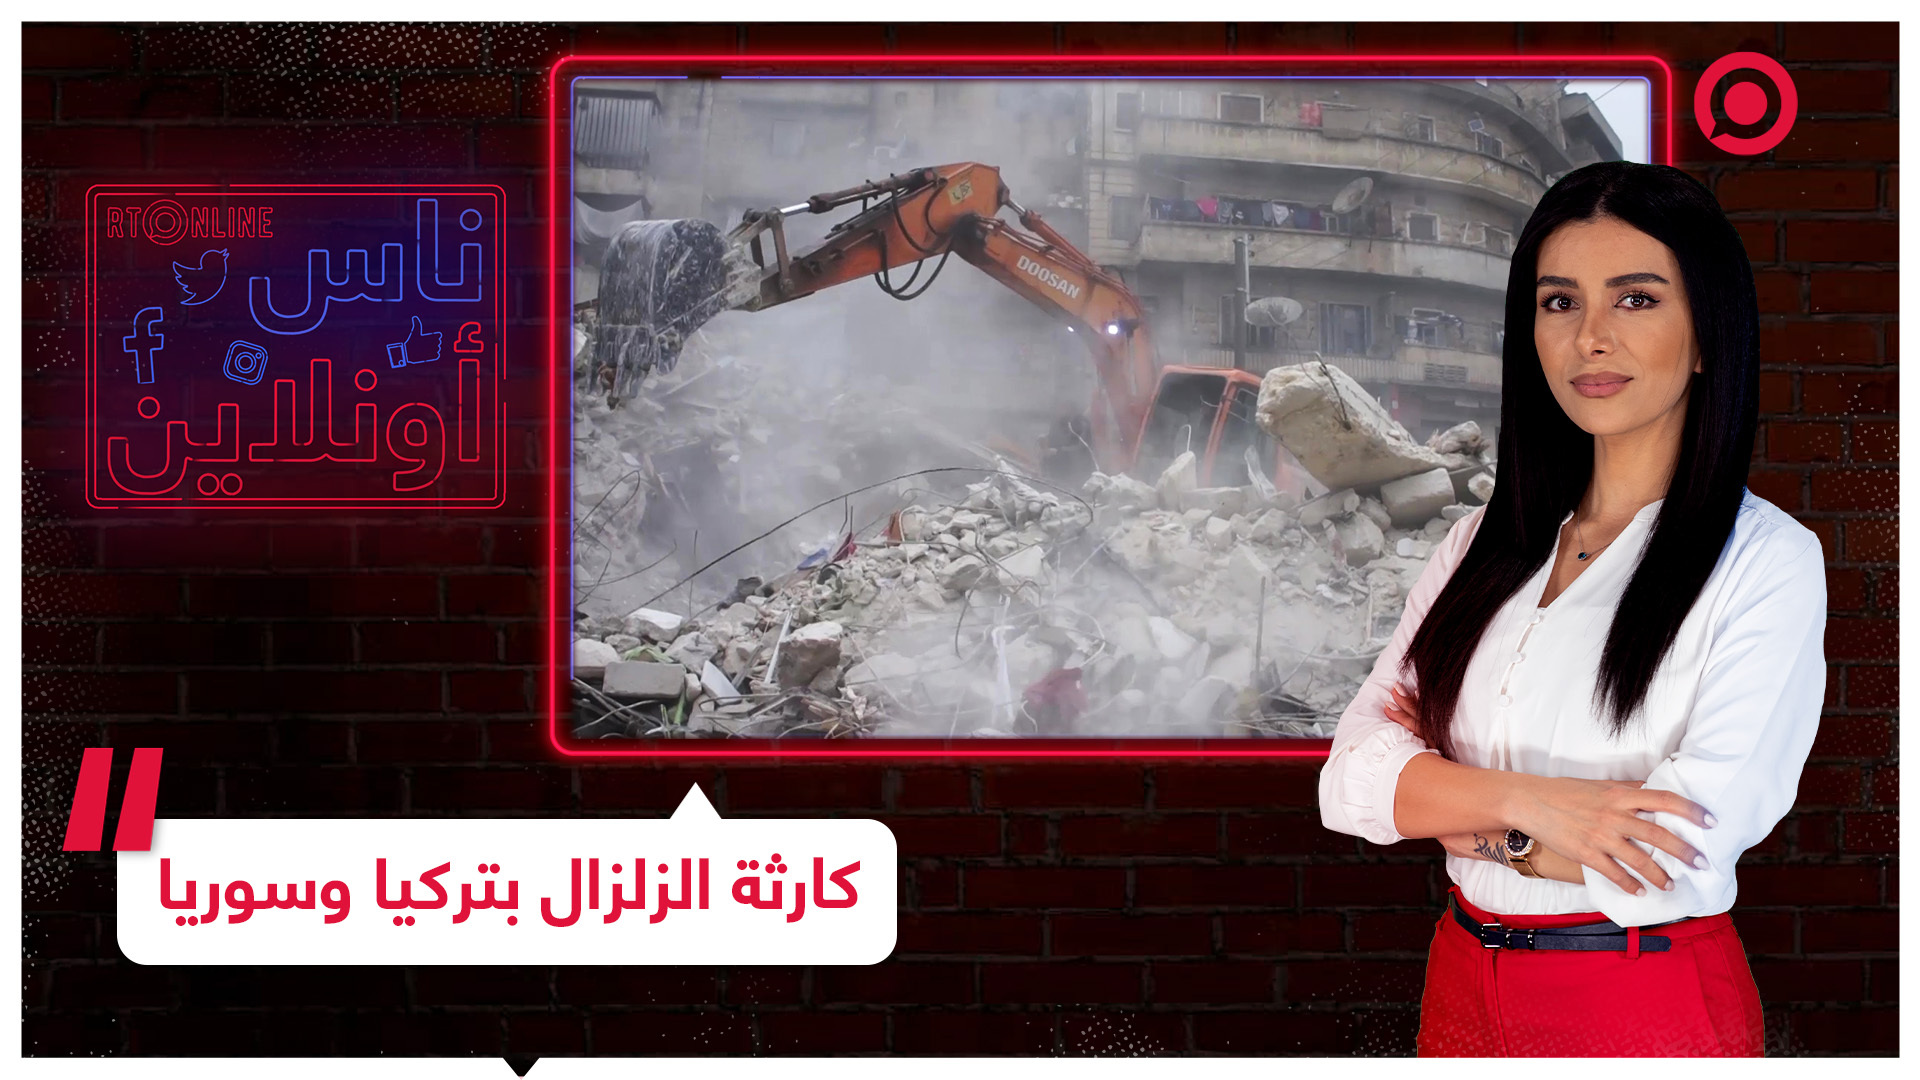 سوريون يطلقون حملات إلكترونية لرفع الحصار بعد كارثة الزلزال